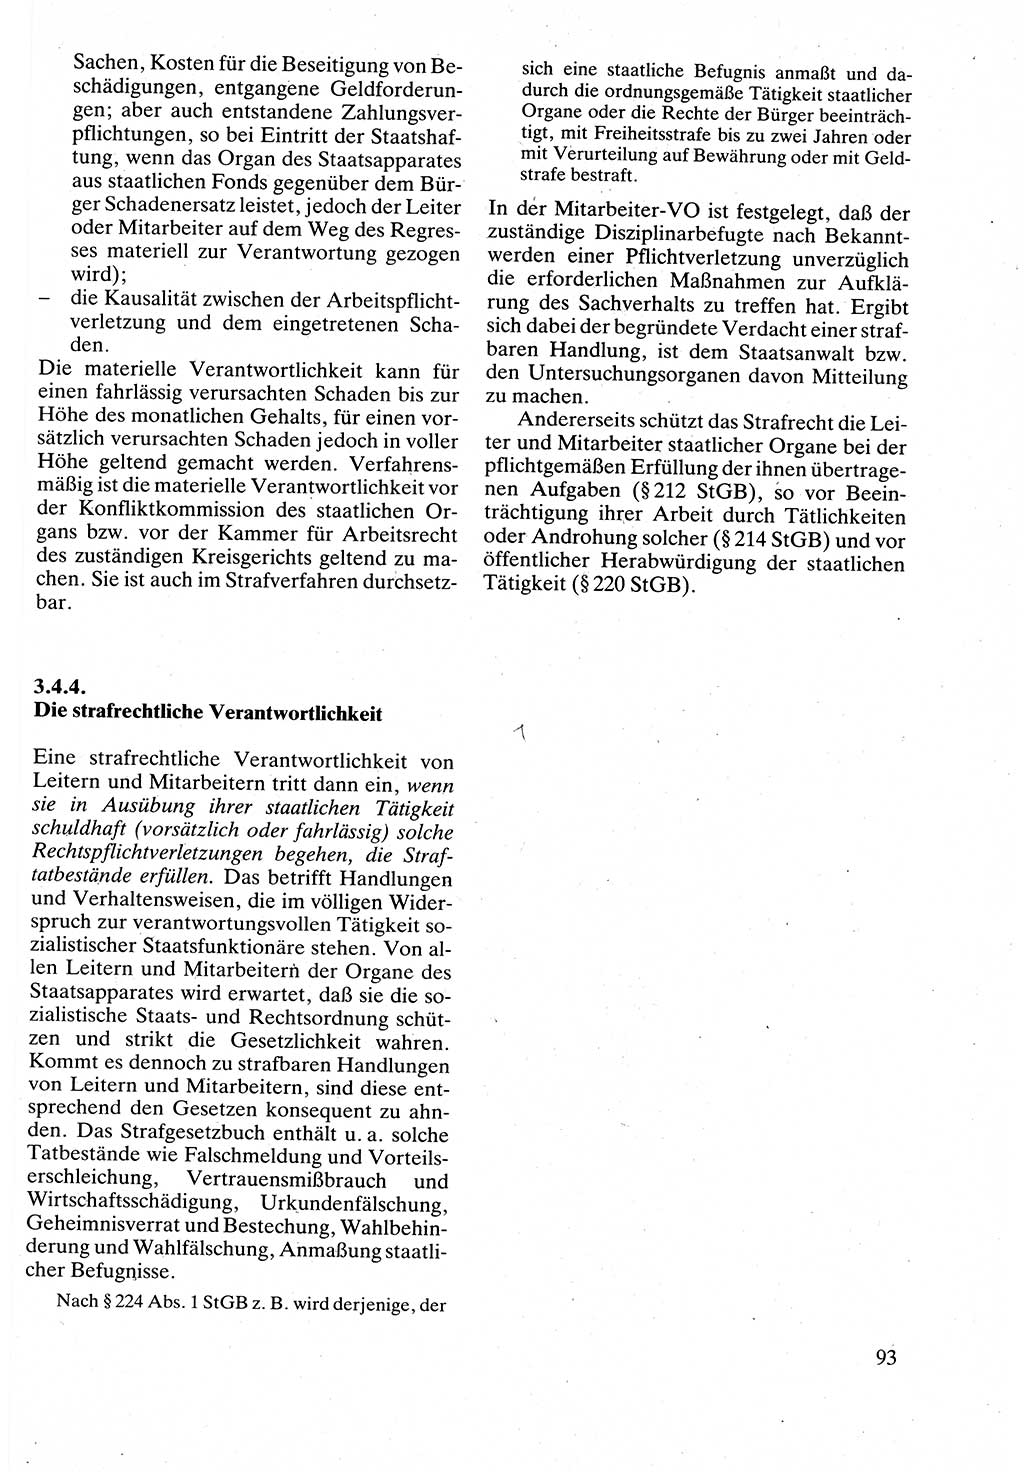 Verwaltungsrecht [Deutsche Demokratische Republik (DDR)], Lehrbuch 1988, Seite 93 (Verw.-R. DDR Lb. 1988, S. 93)